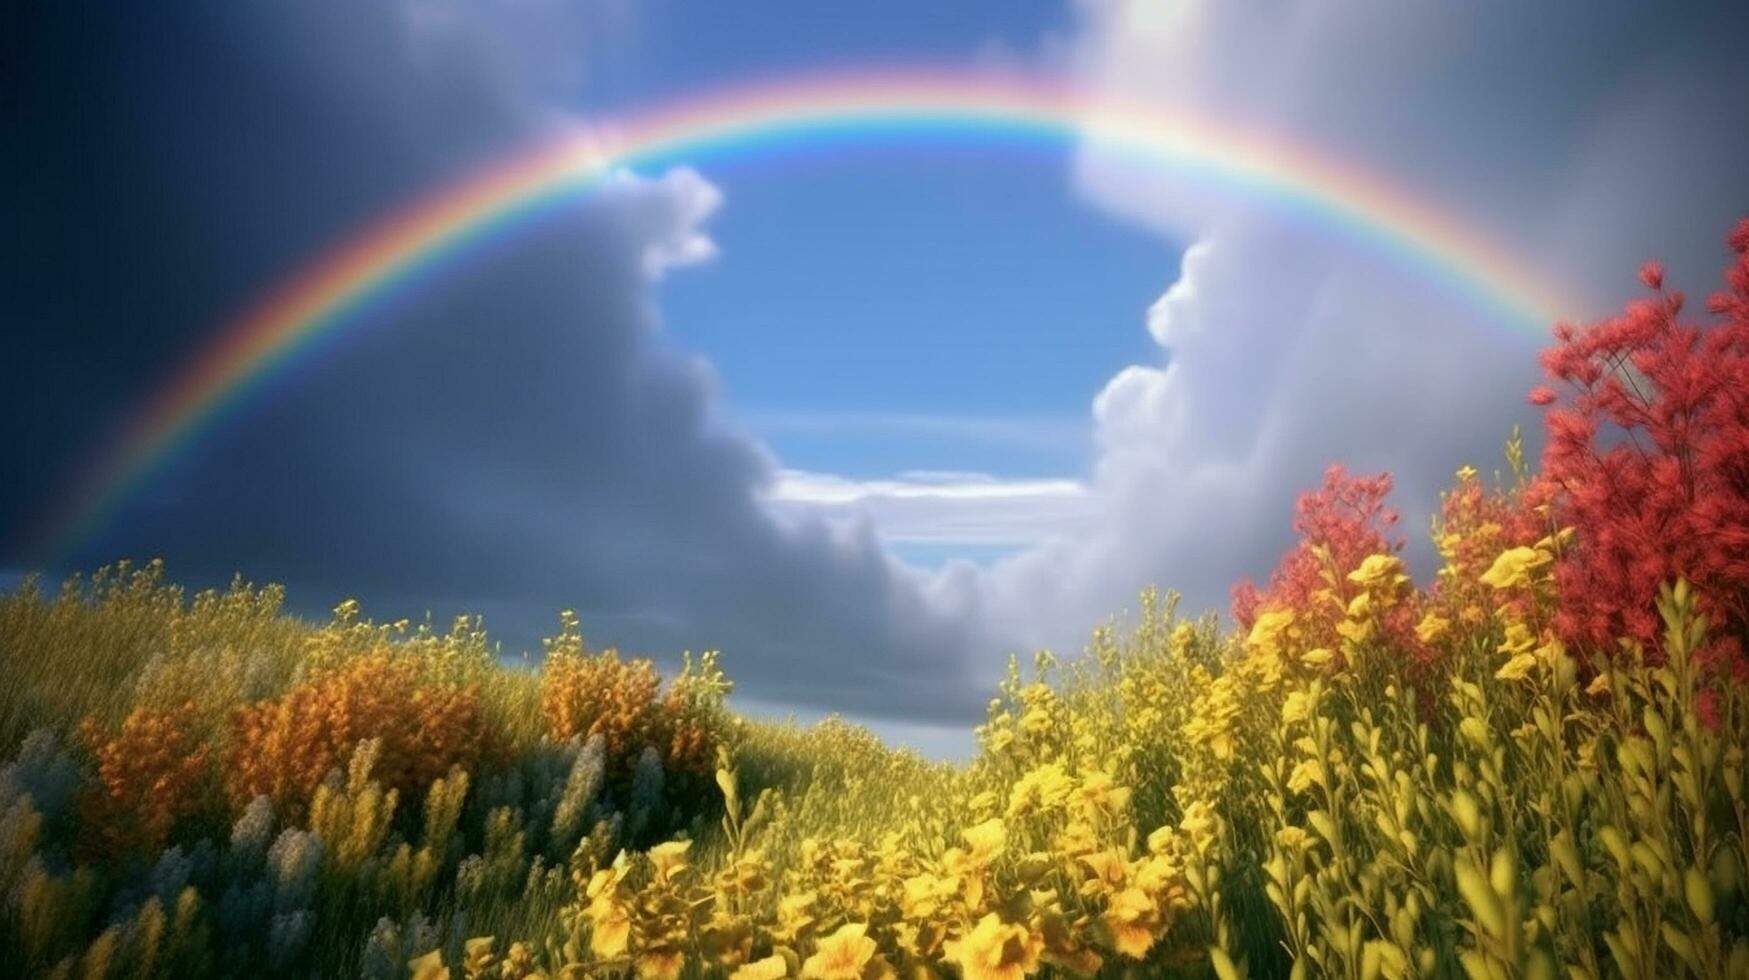 Blau Himmel Wolken Regenbogen hell Blumen brillant Sonnenlicht ai generiert Bild foto